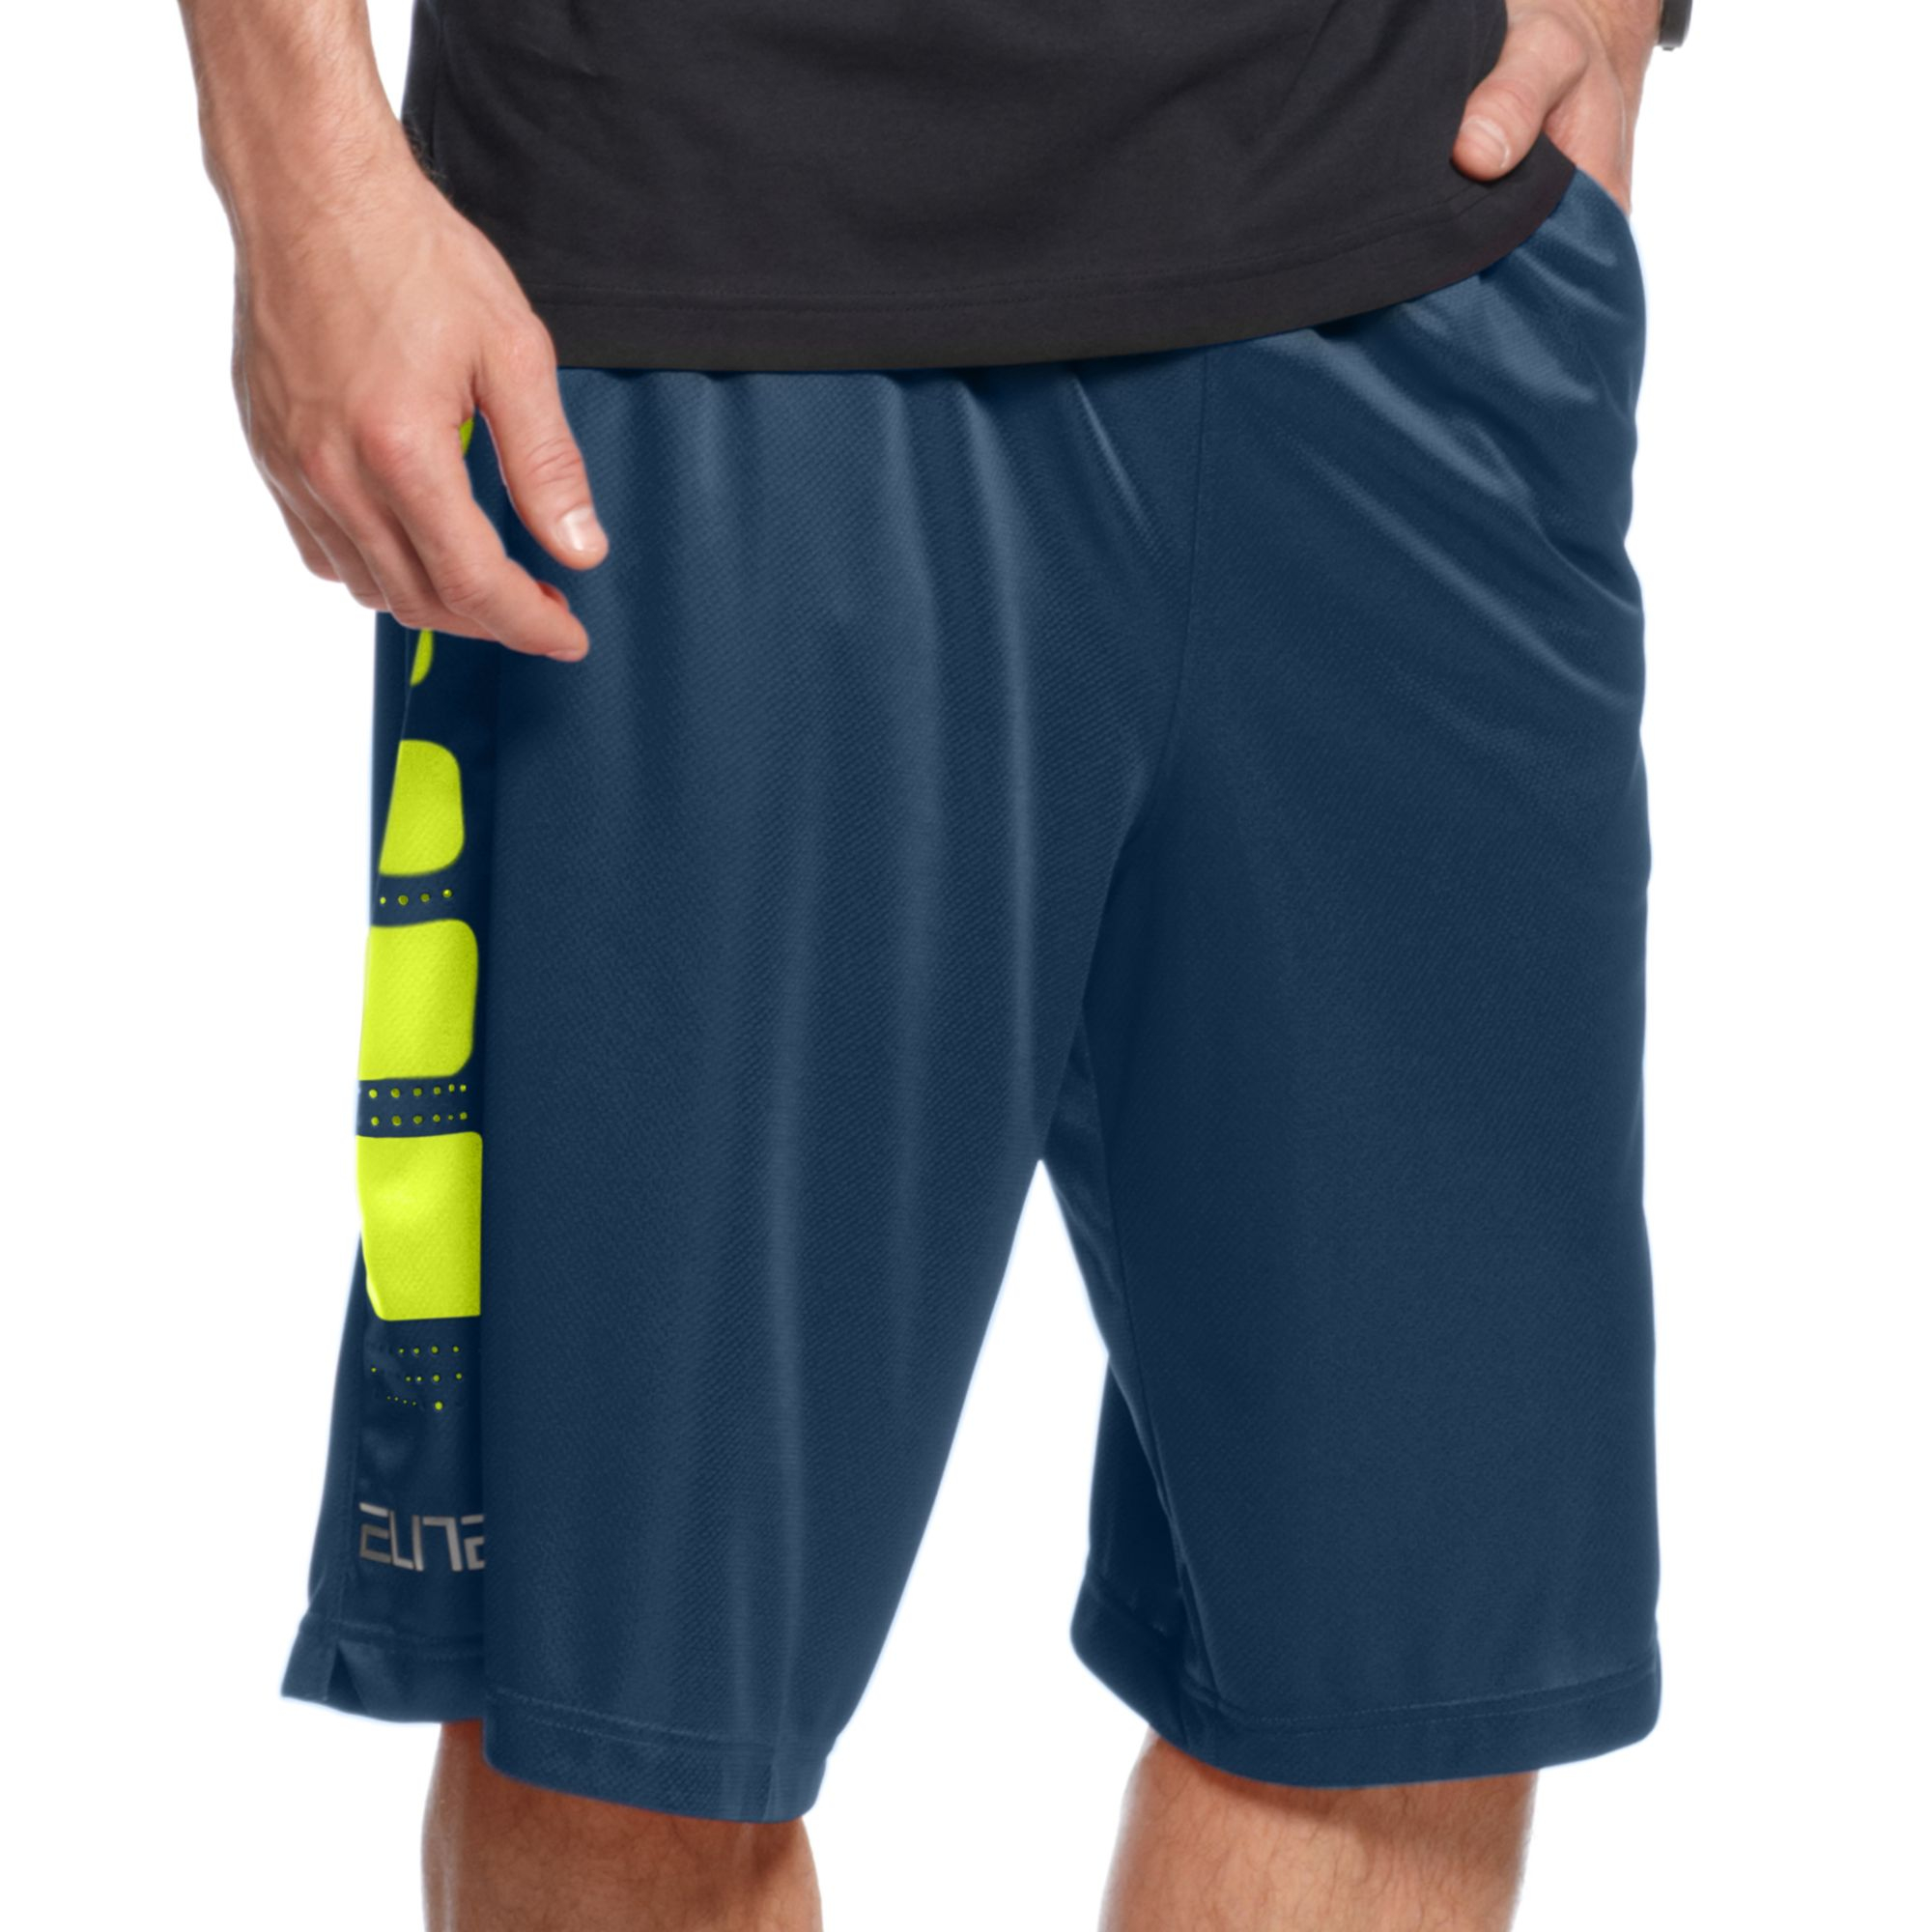 Nike Elite Stripe Basketball Shorts in Blue for Men - Lyst